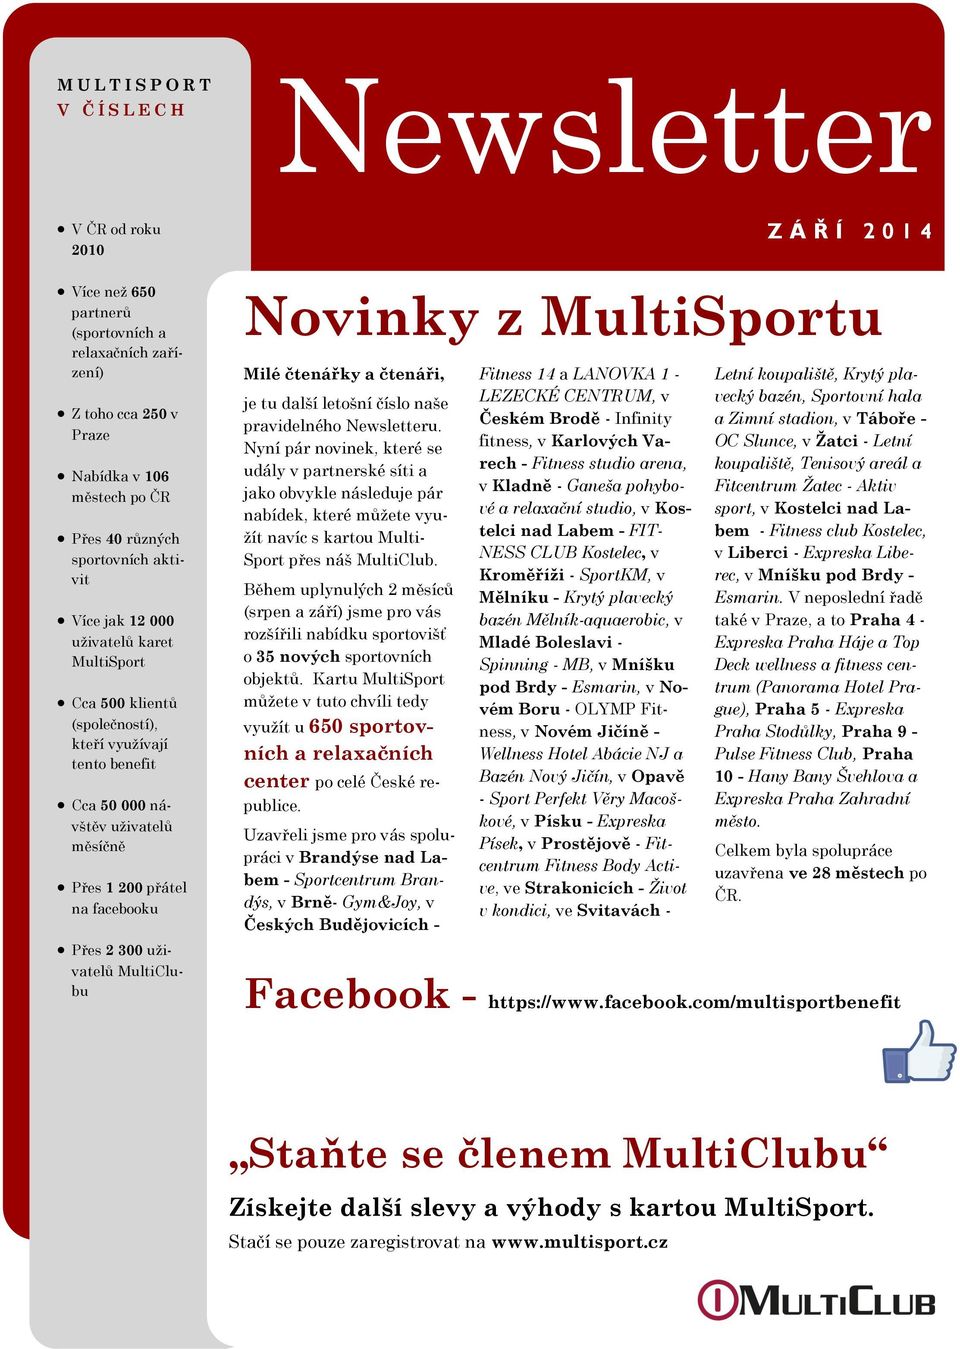 300 uživatelů MultiClubu Novinky z MultiSportu Milé čtenářky a čtenáři, je tu další letošní číslo naše pravidelného Newsletteru.